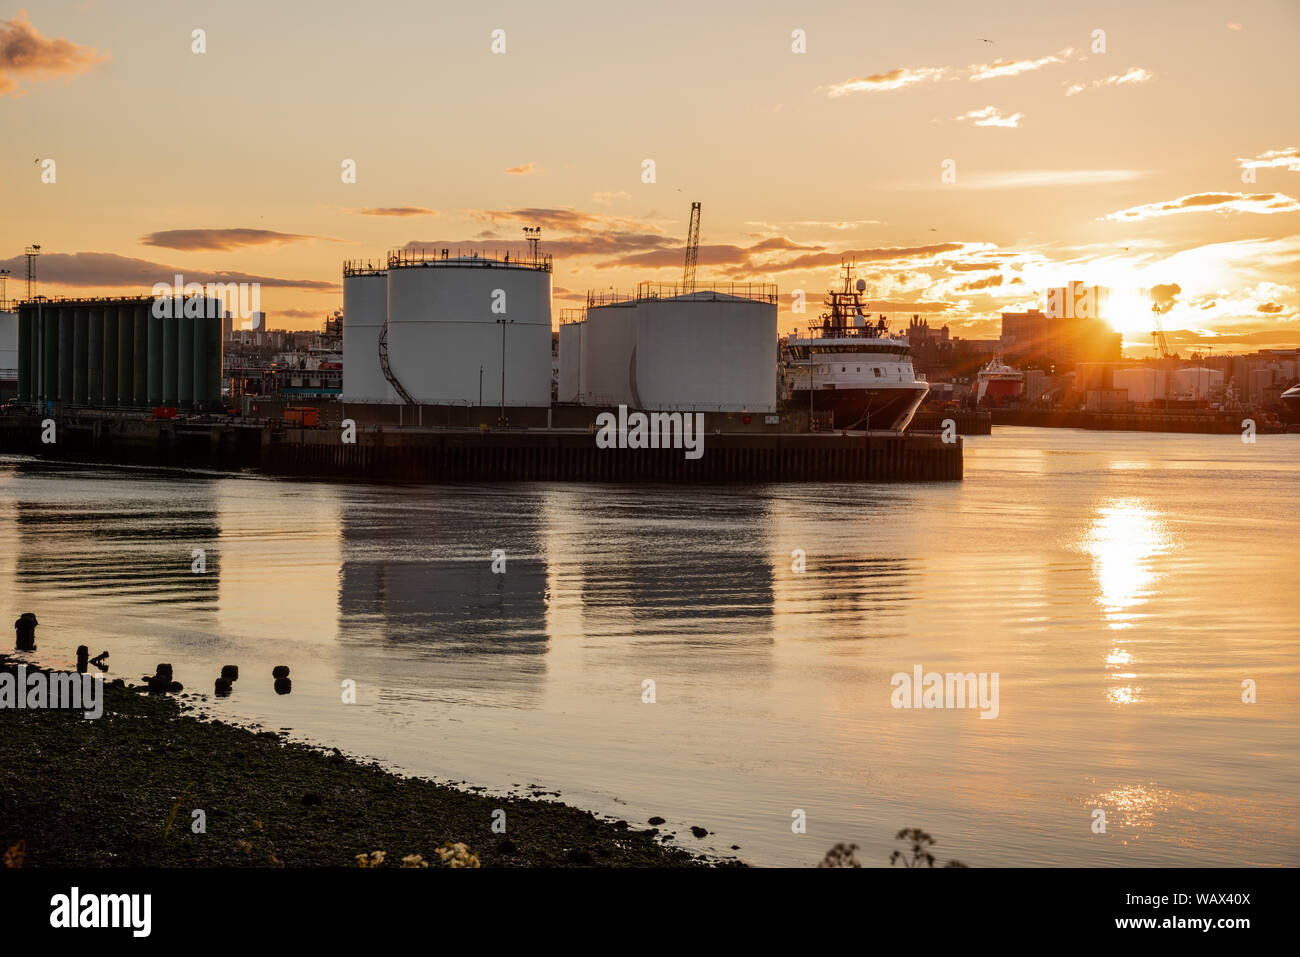 Serbatoi di olio su un molo in un porto commerciale al tramonto Foto Stock